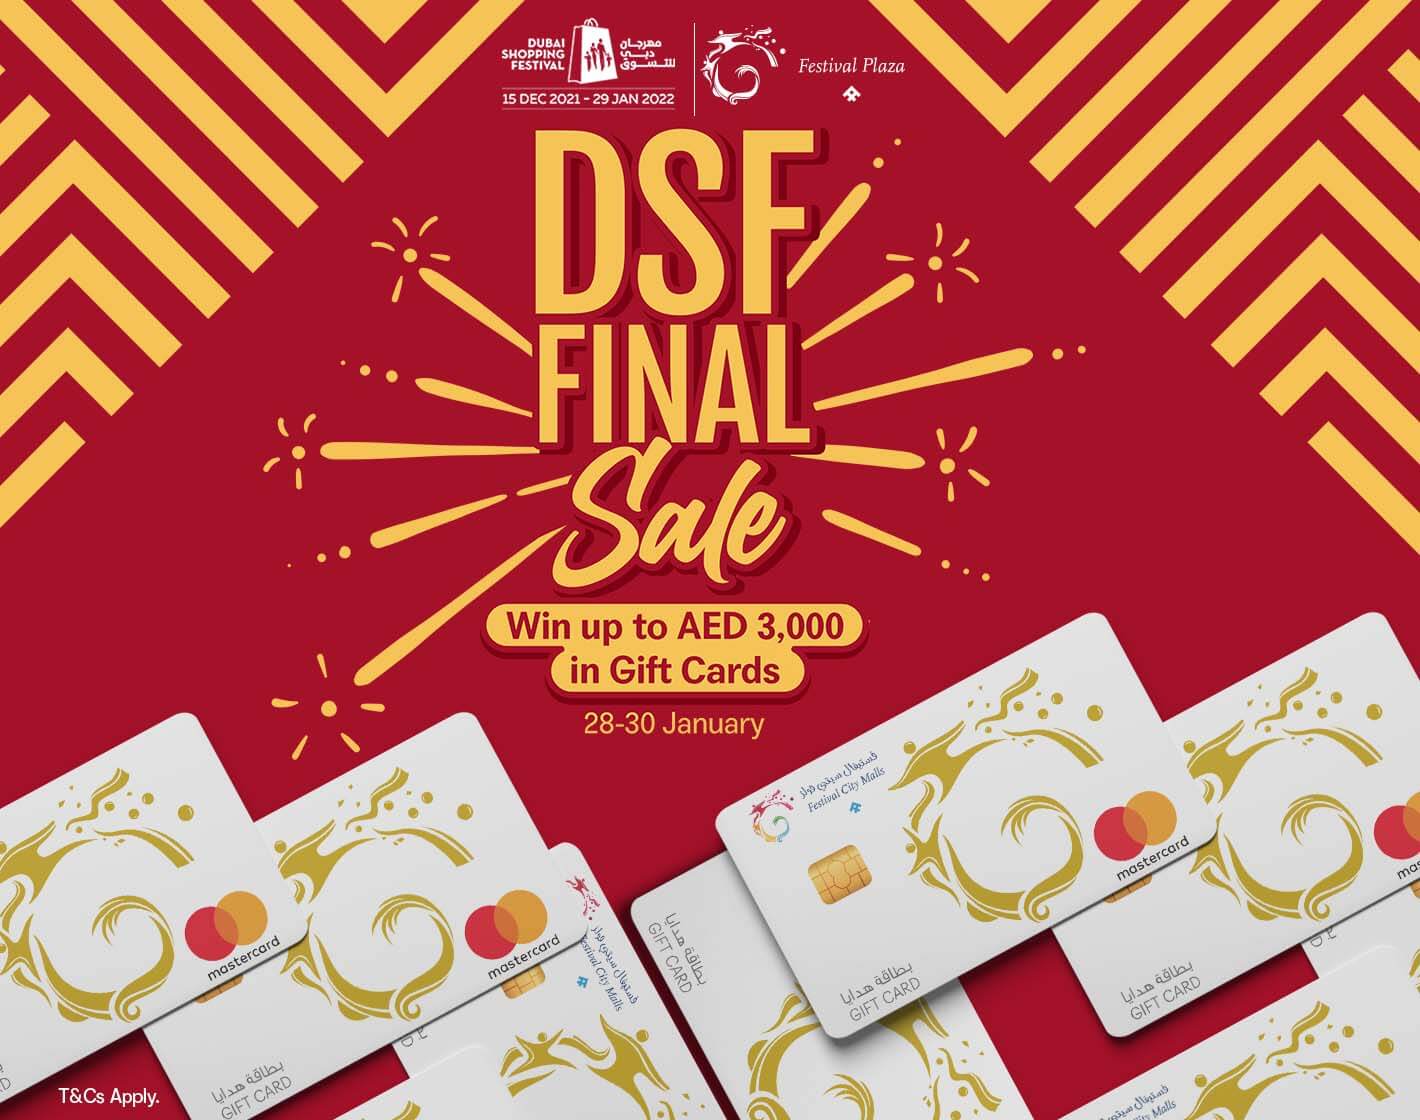 DSF Final Sale!